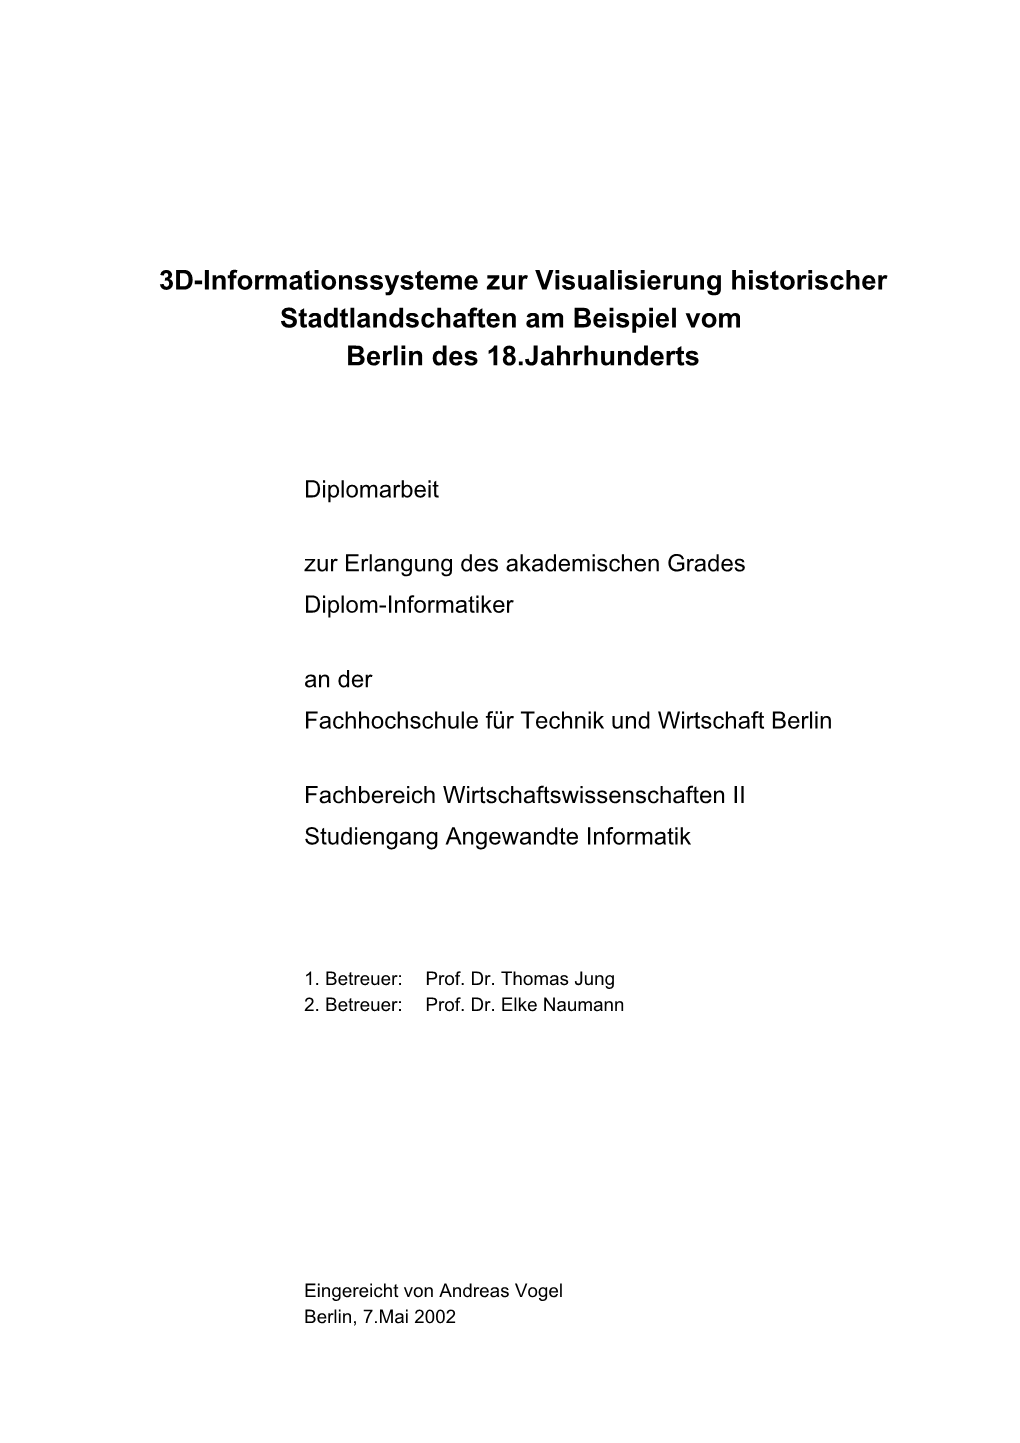 Volltext Der Diplomarbeit Im PDF-Format